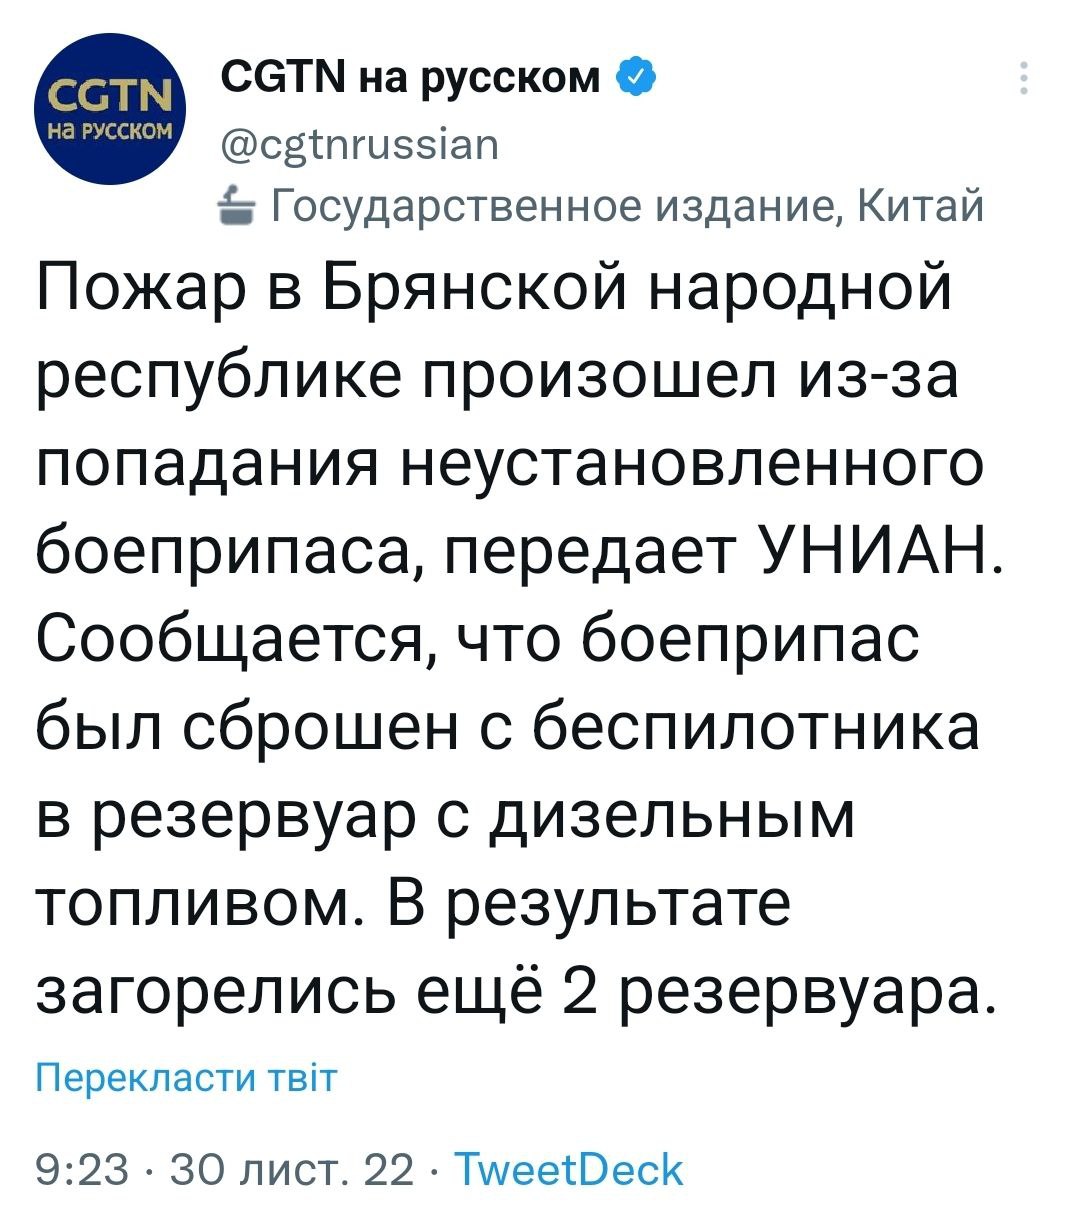 Канал CGTN называет Брянскую область РФ "Брянской народной республикой"